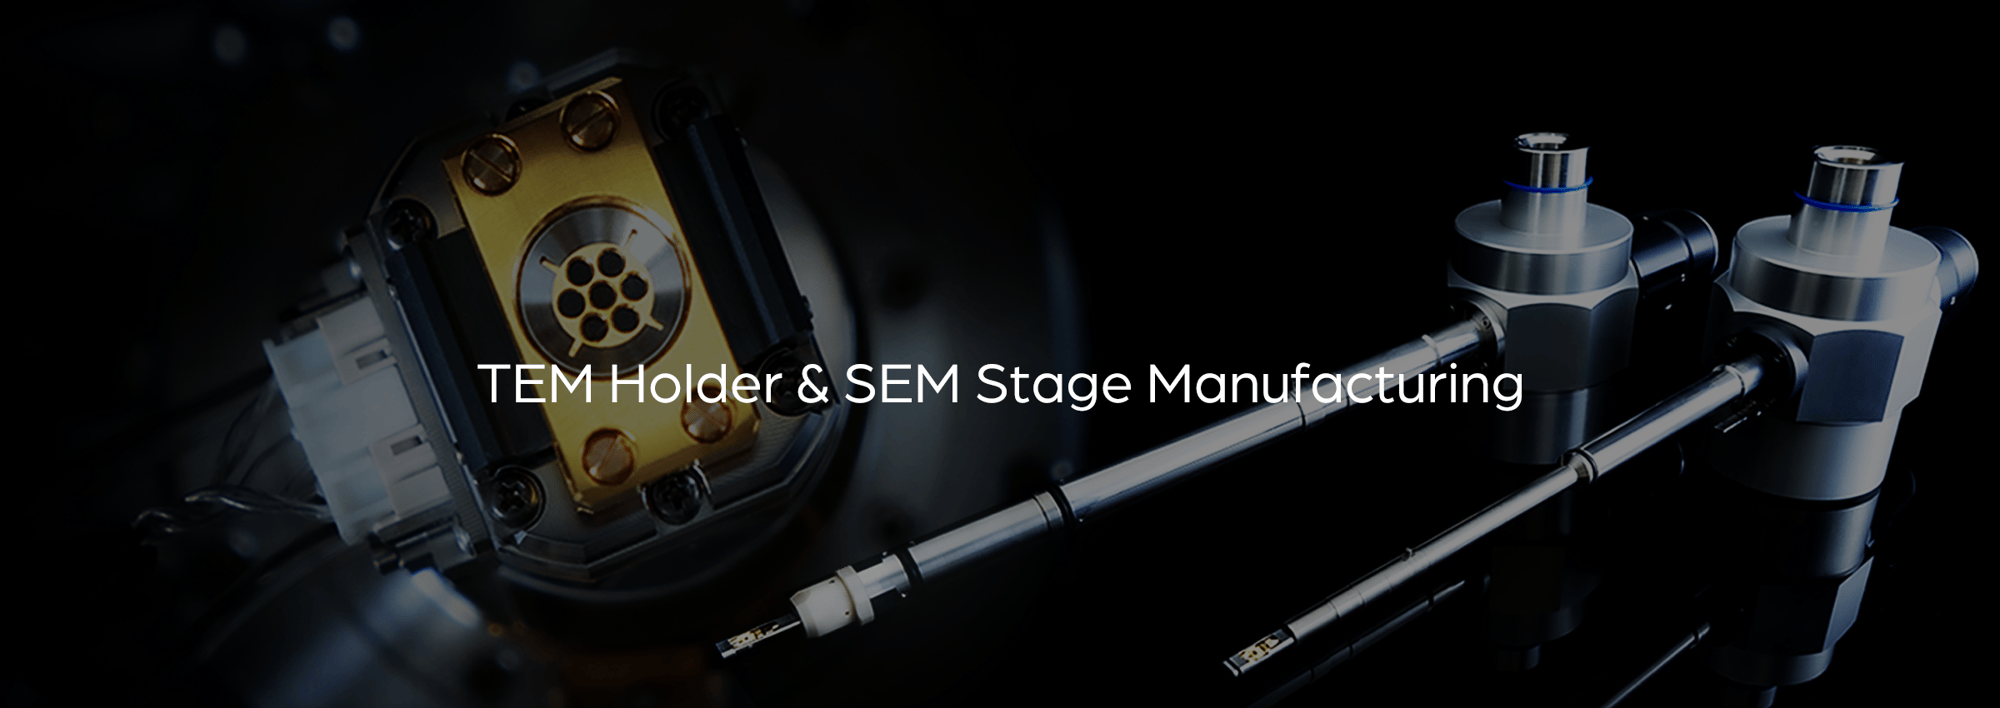 TEM Holder&SEM Stage Manufacturing